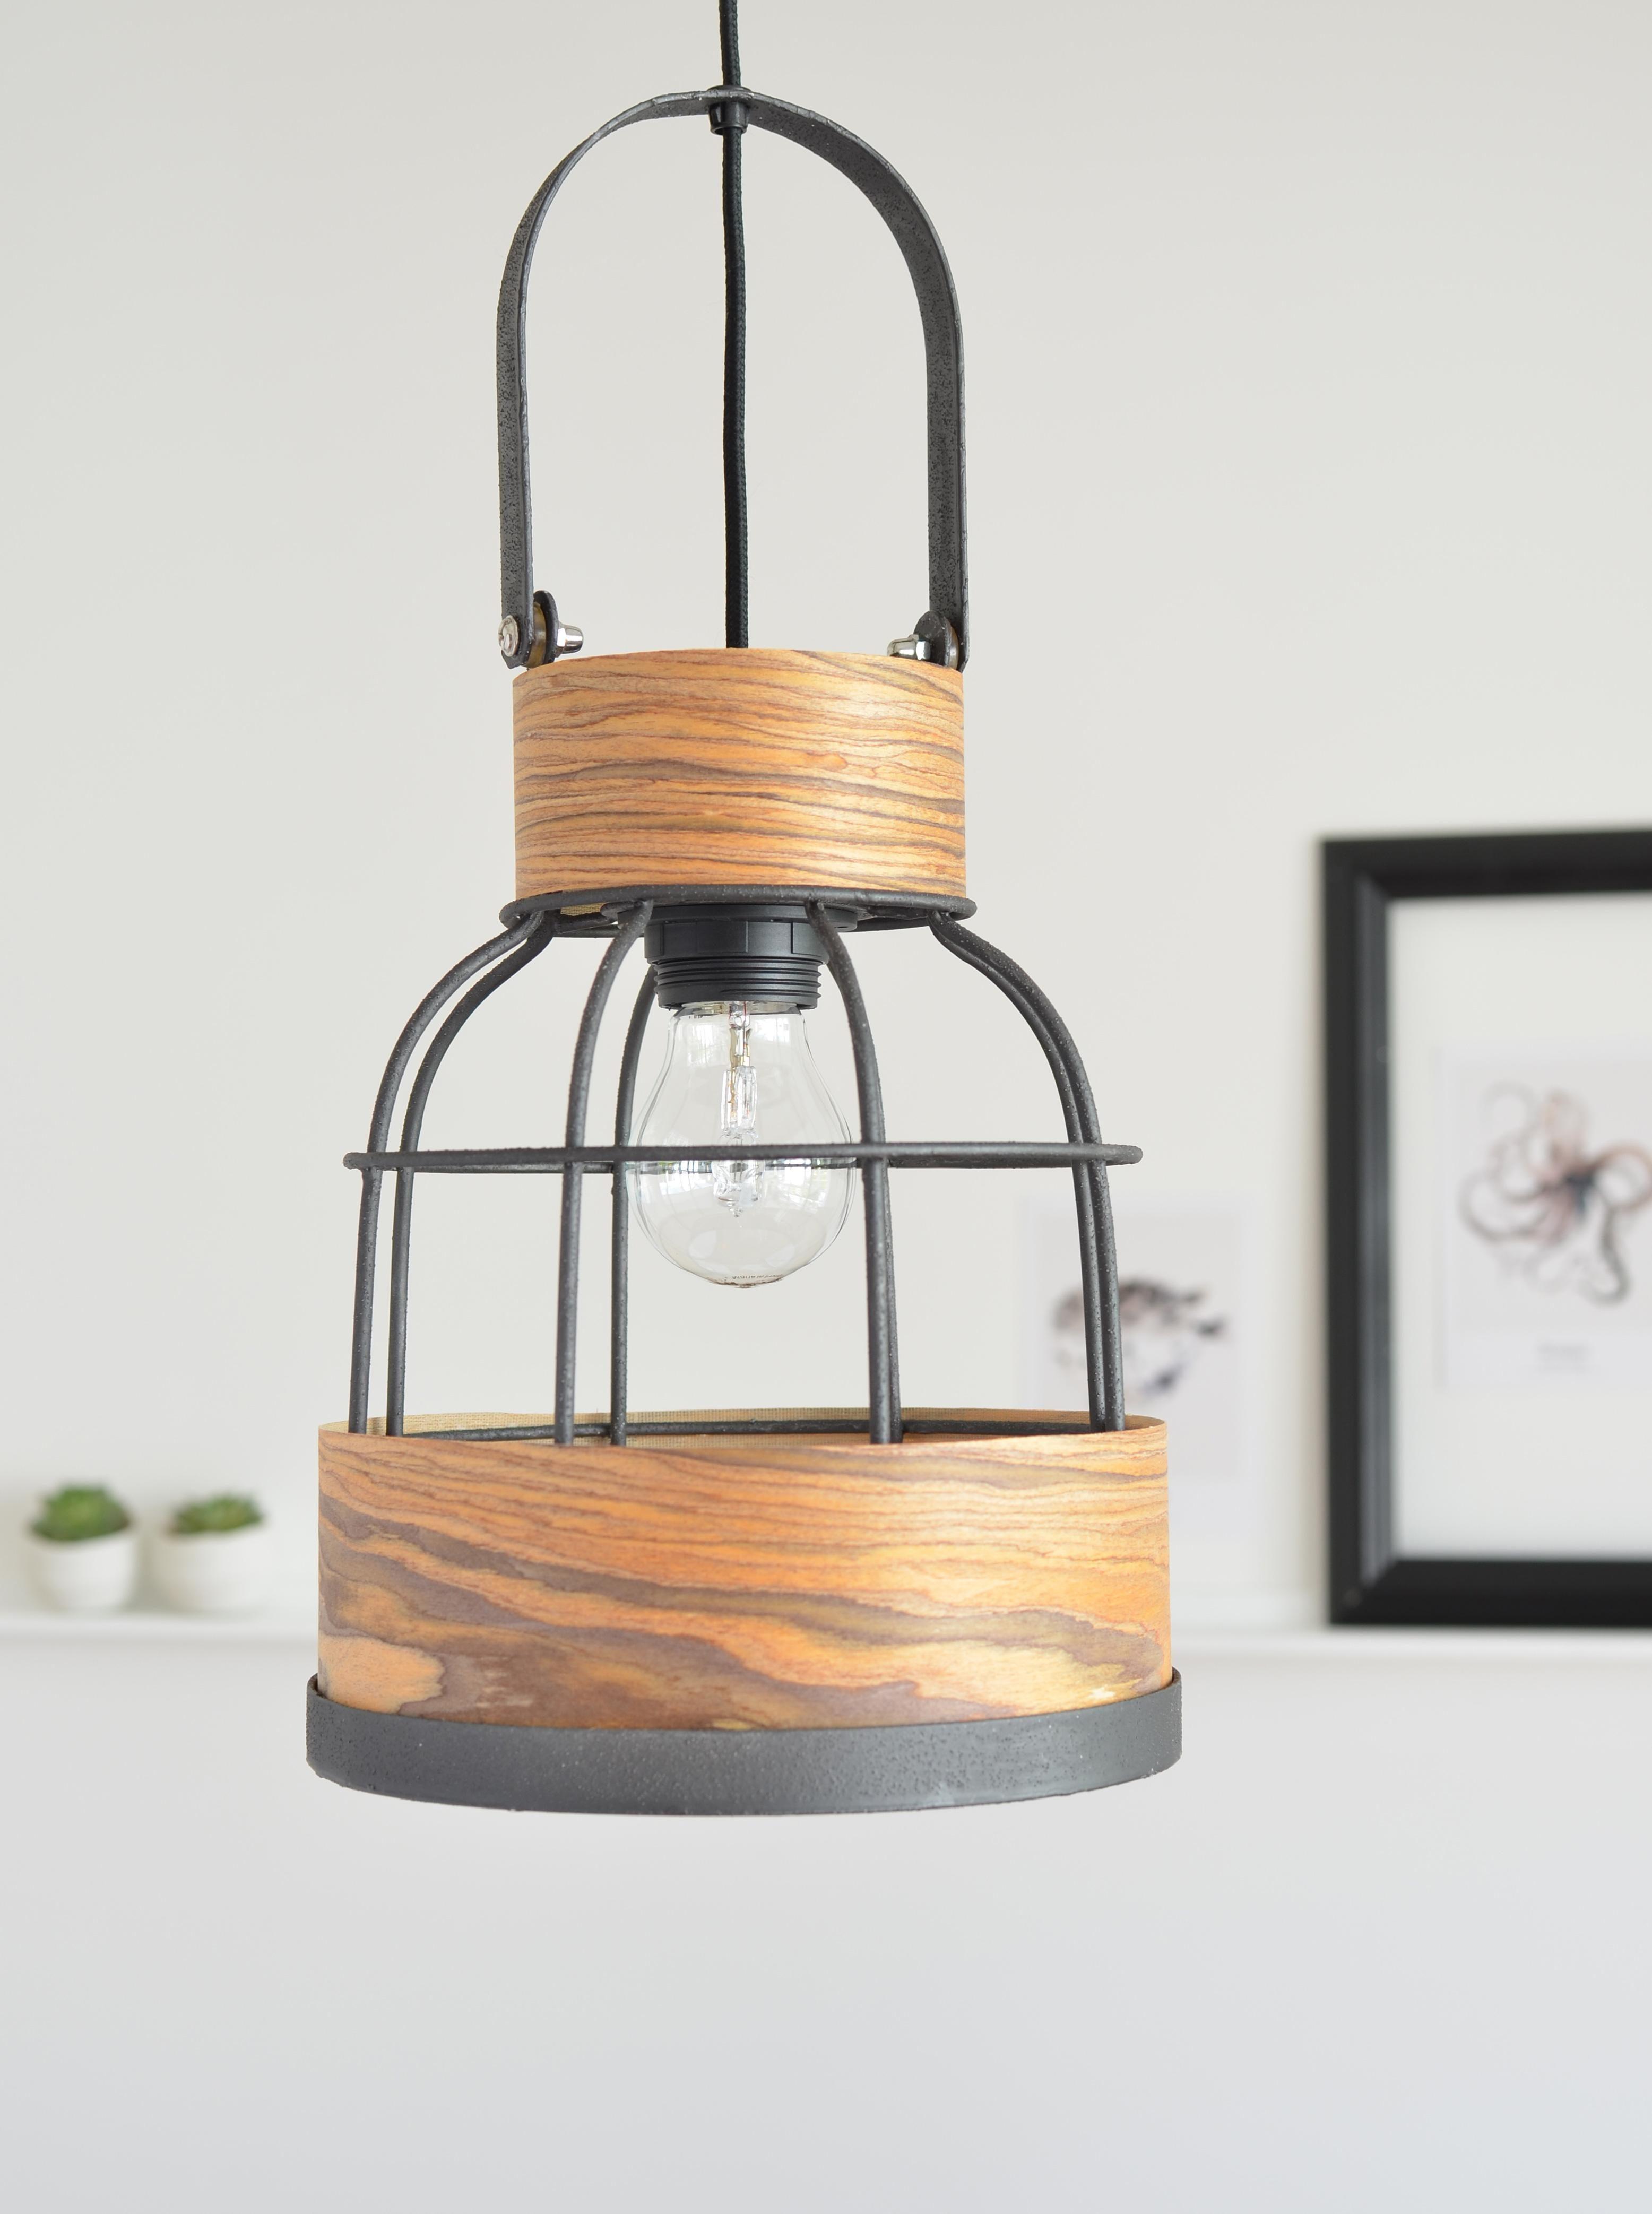 Mehr zur gepimpten Lampe mit Holzfurnier-Stoff gibt's auf dem Blog #DIYweek #DIYlampe #diy #interior #minimalistisch